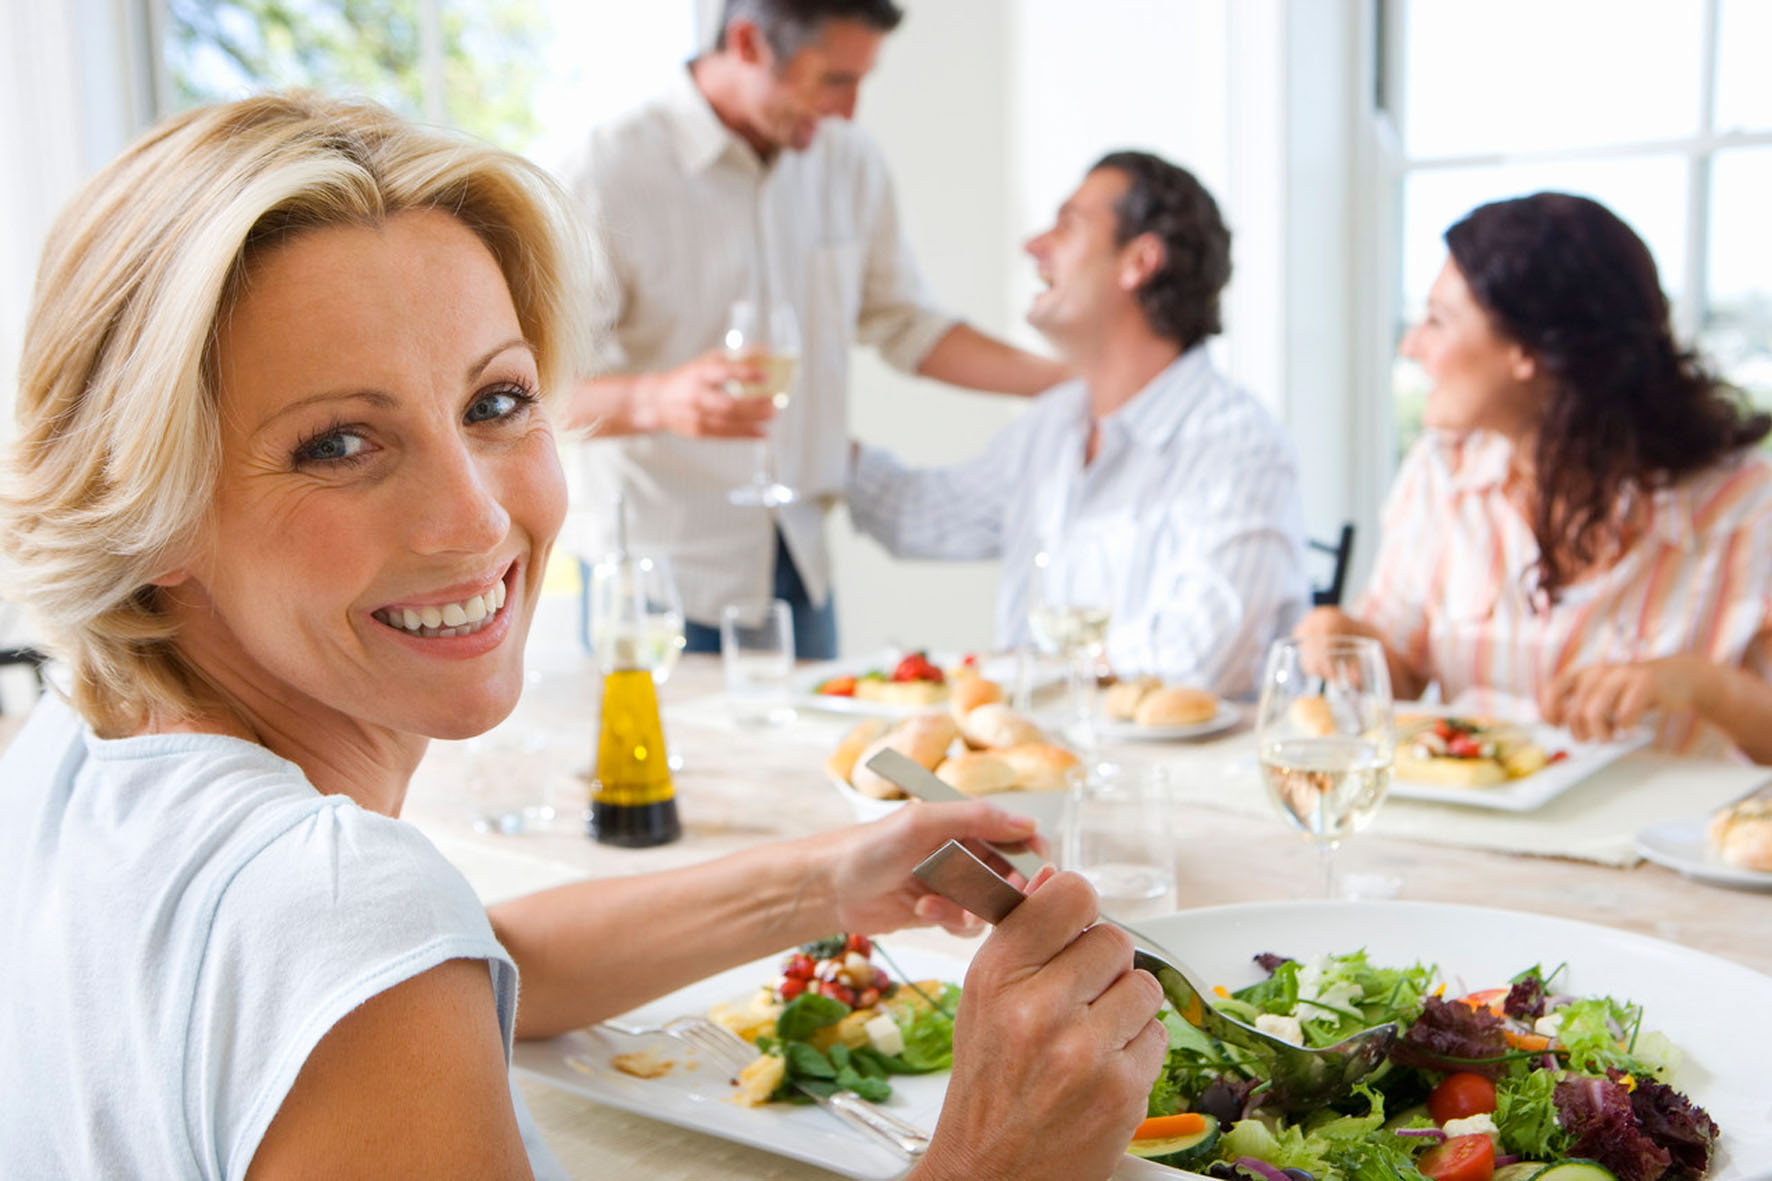 Wer als Vorspeise einen Salat genießt, ist bereits etwas gesättigt und kommt beim Hauptgericht mit weniger aus.